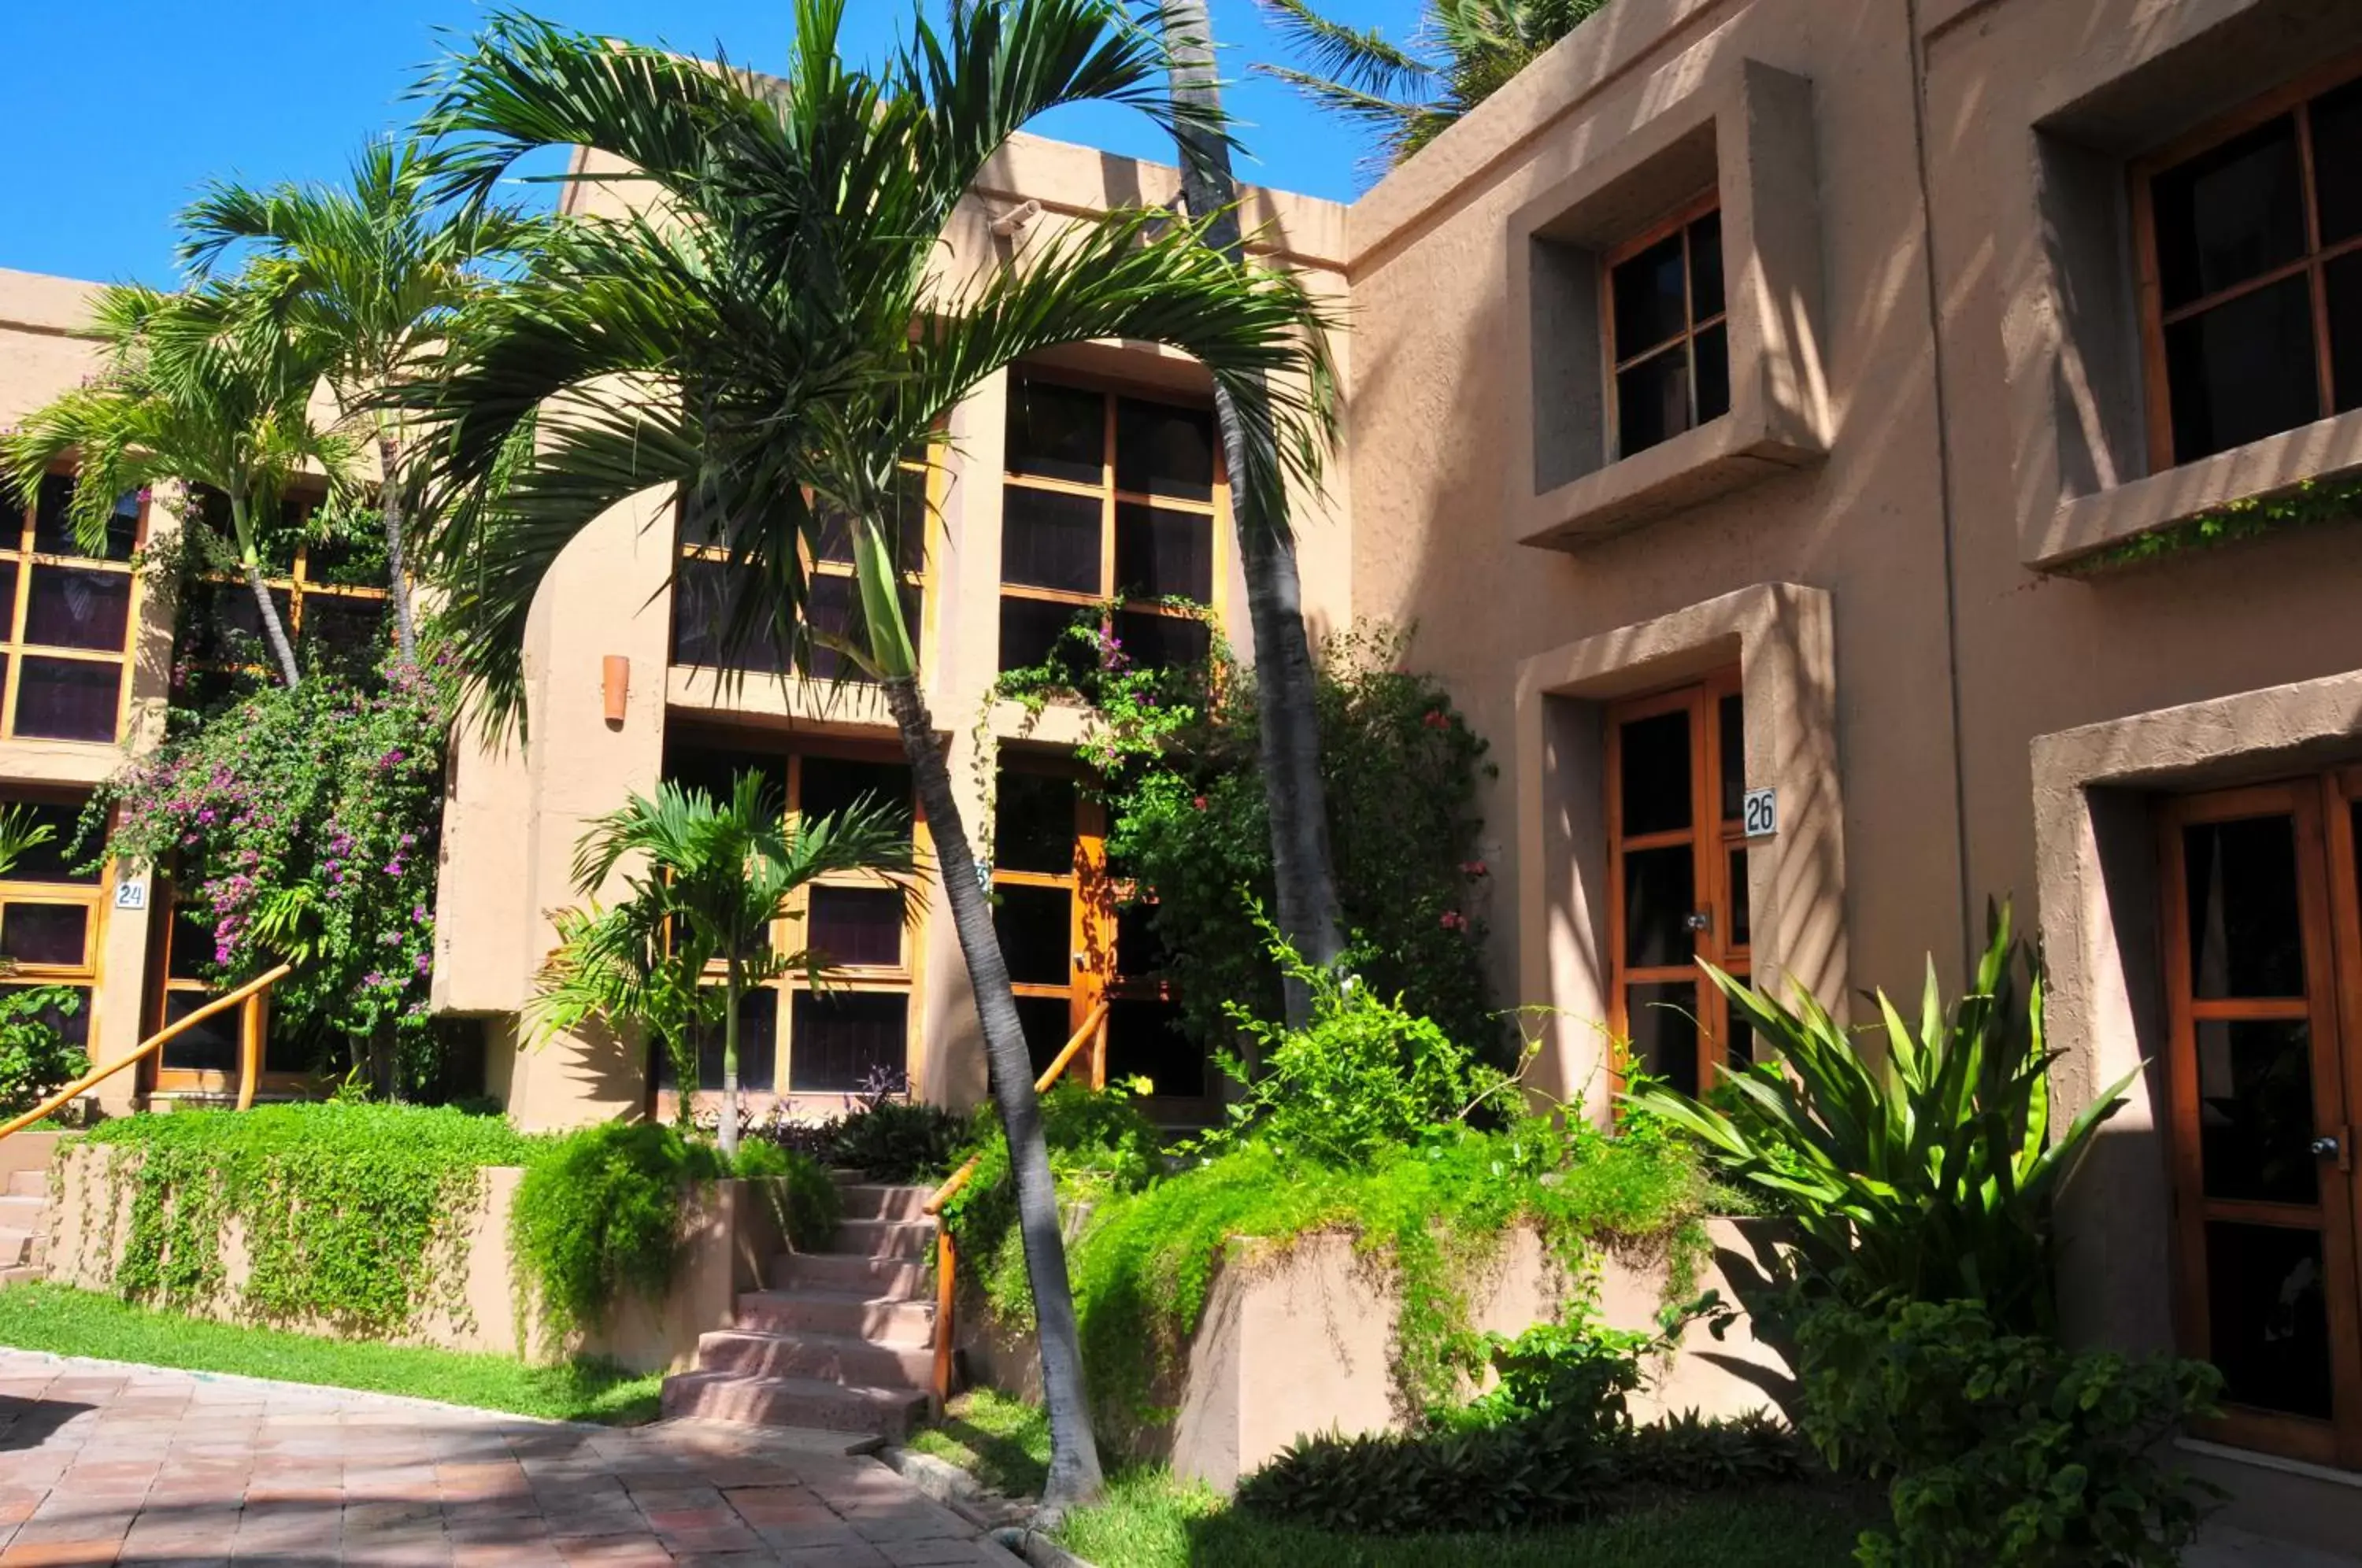 Property Building in Villas El Rancho Green Resort